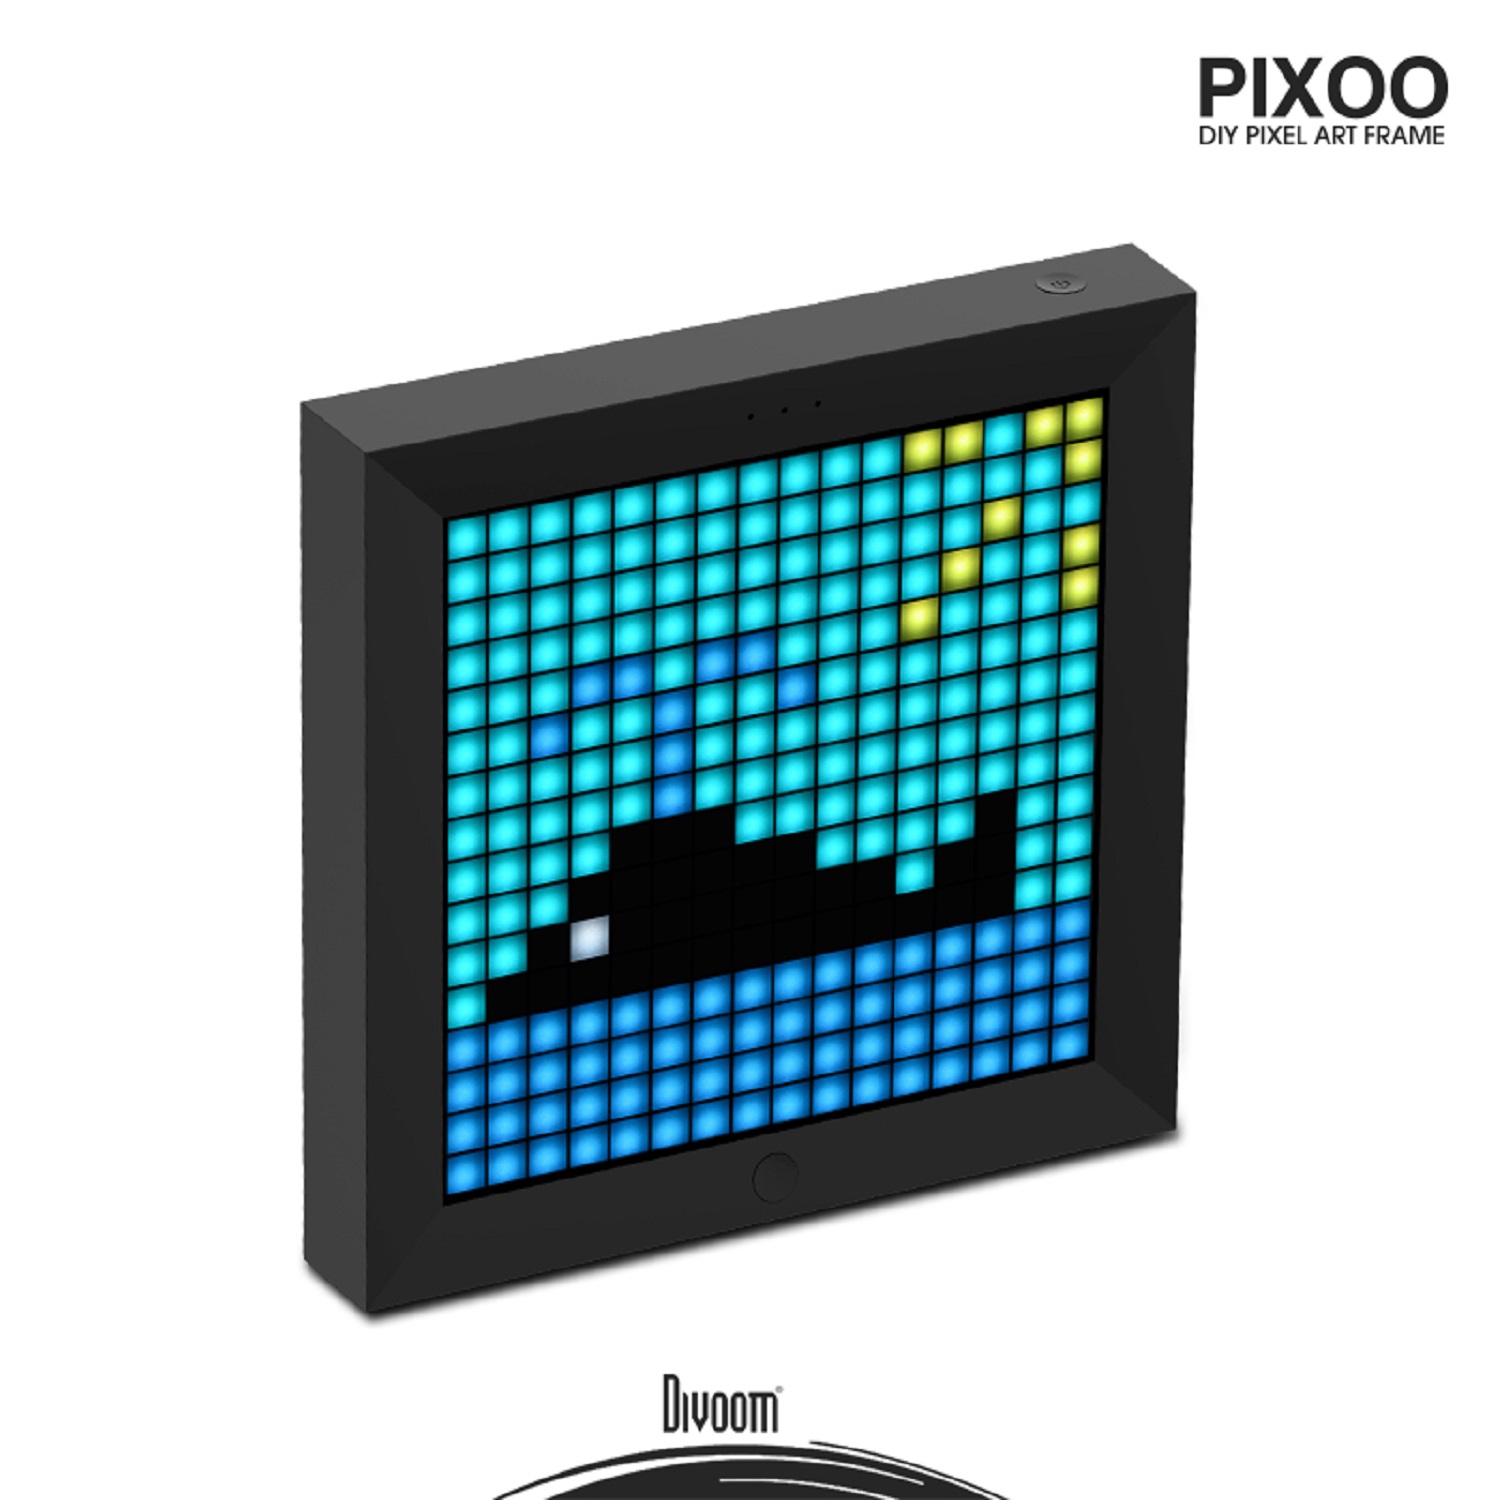 Divoom Pixoo - Digitaler Bilderrahmen mit Pixel Design zum Selbstgestalten